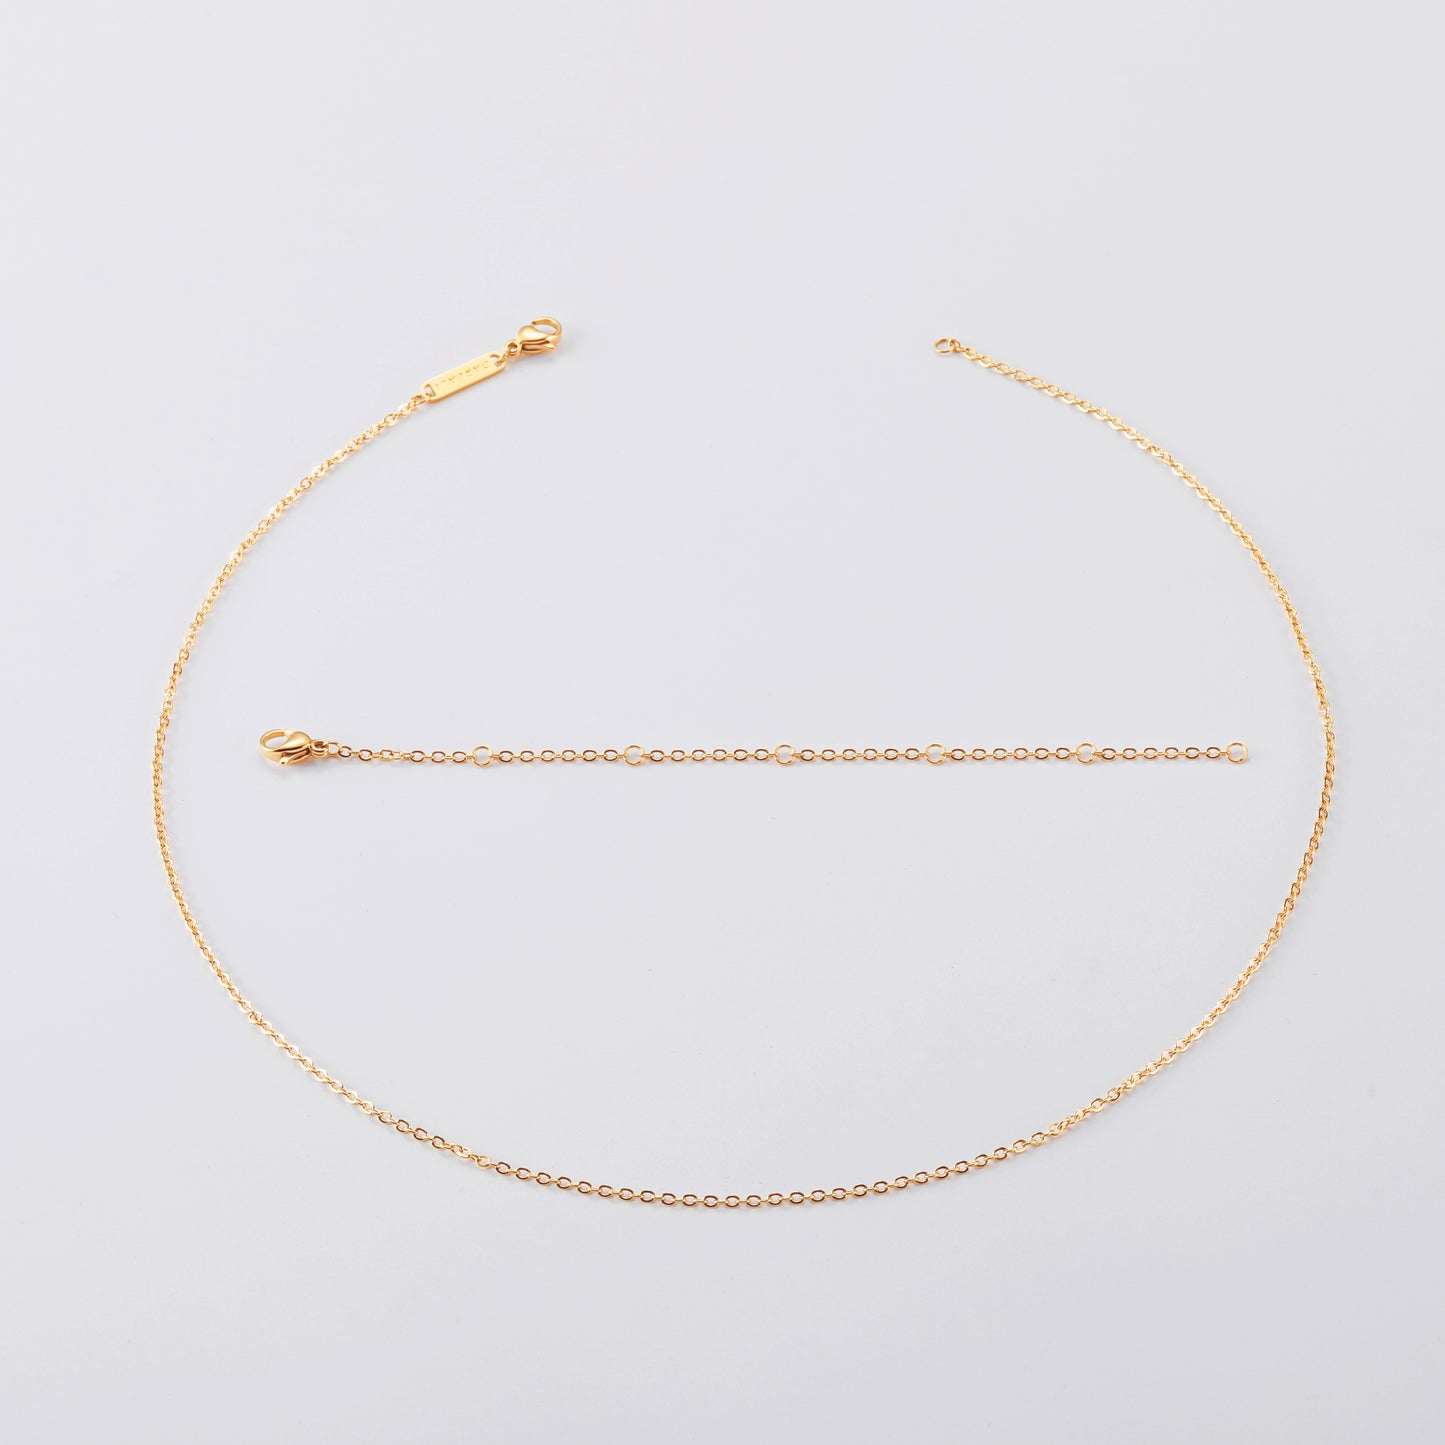 Darjali Jewelry Radiant Star Necklace 18K Gold Chain